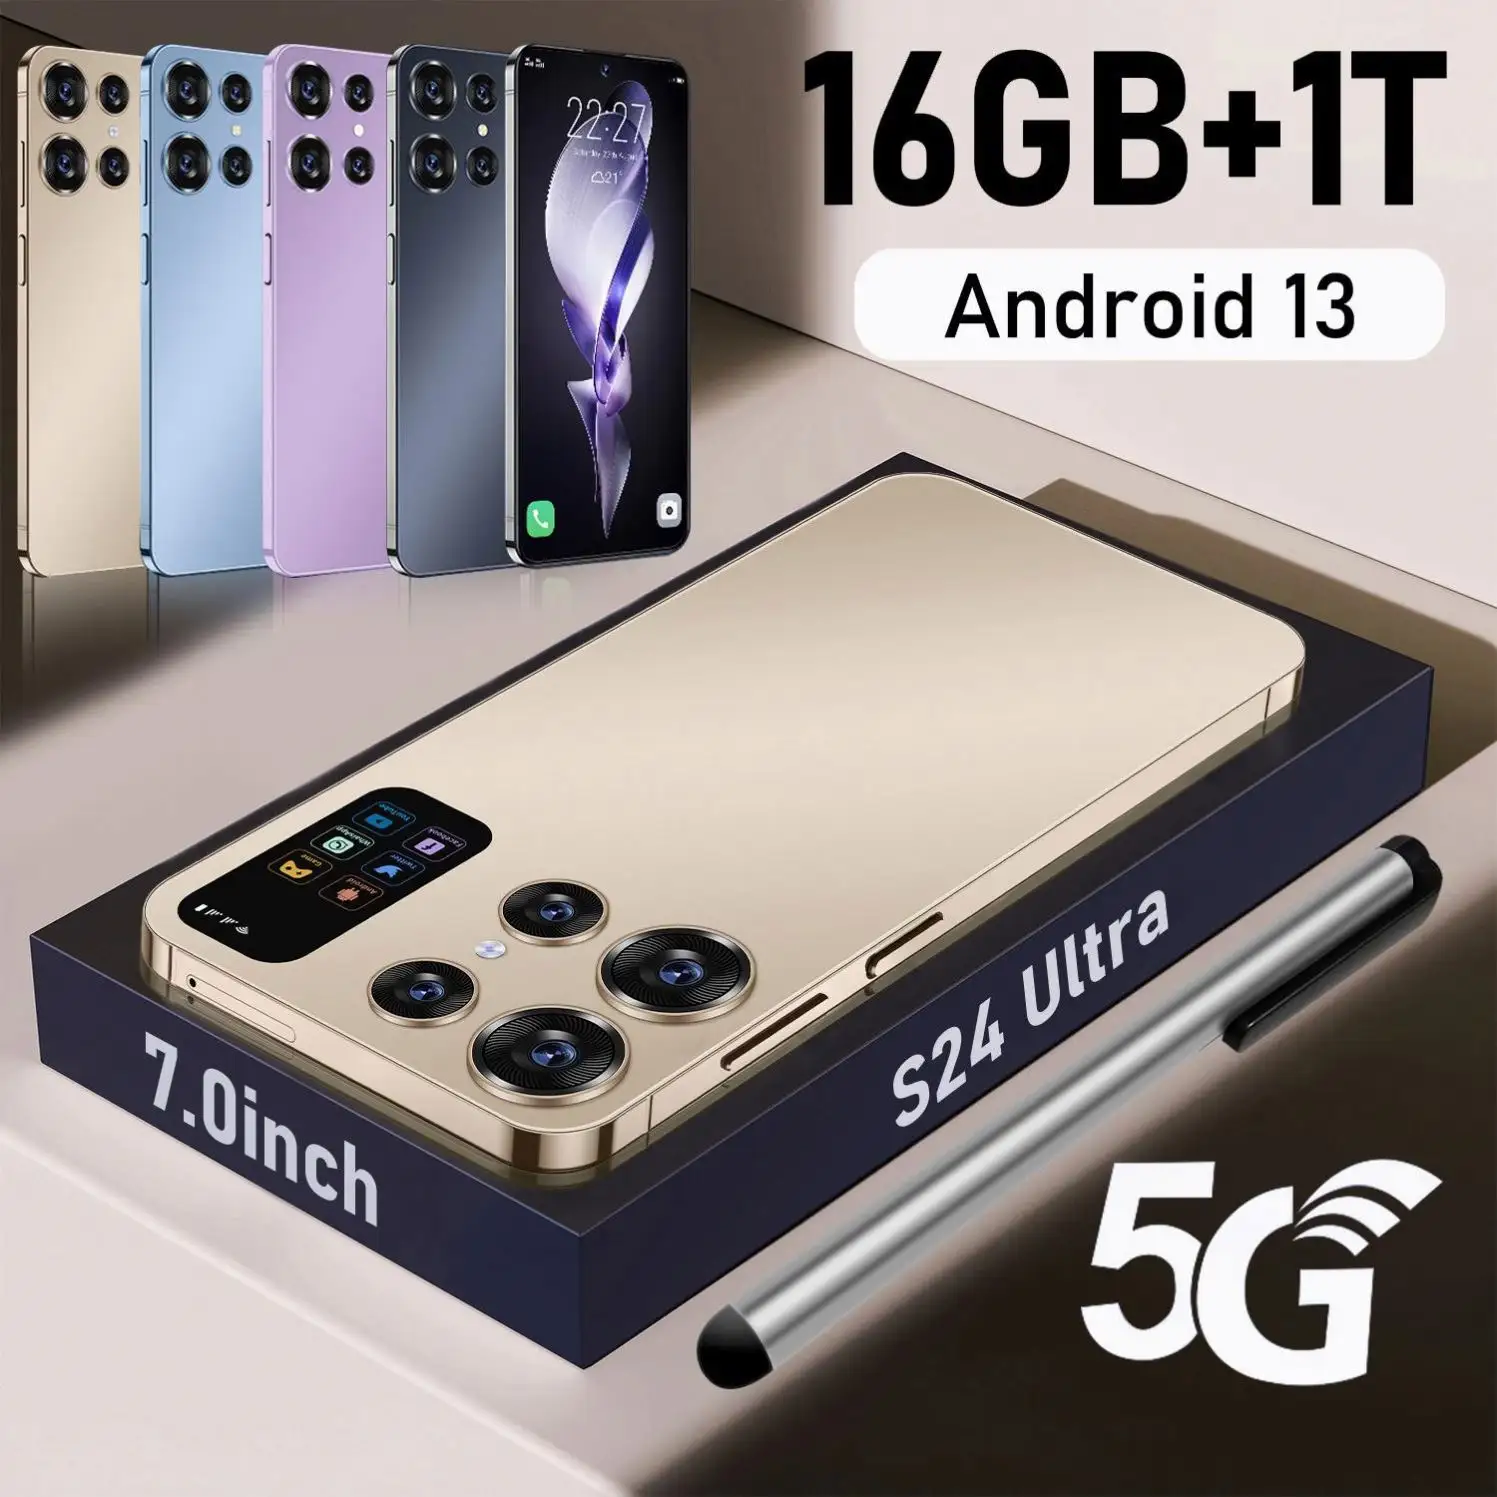 Werkspreis S24 uI tra handy entsperrt 3G 4G 5G hochdicht Lithium-Ionen-Batterie Handy mit reichhaltigen Funktionen